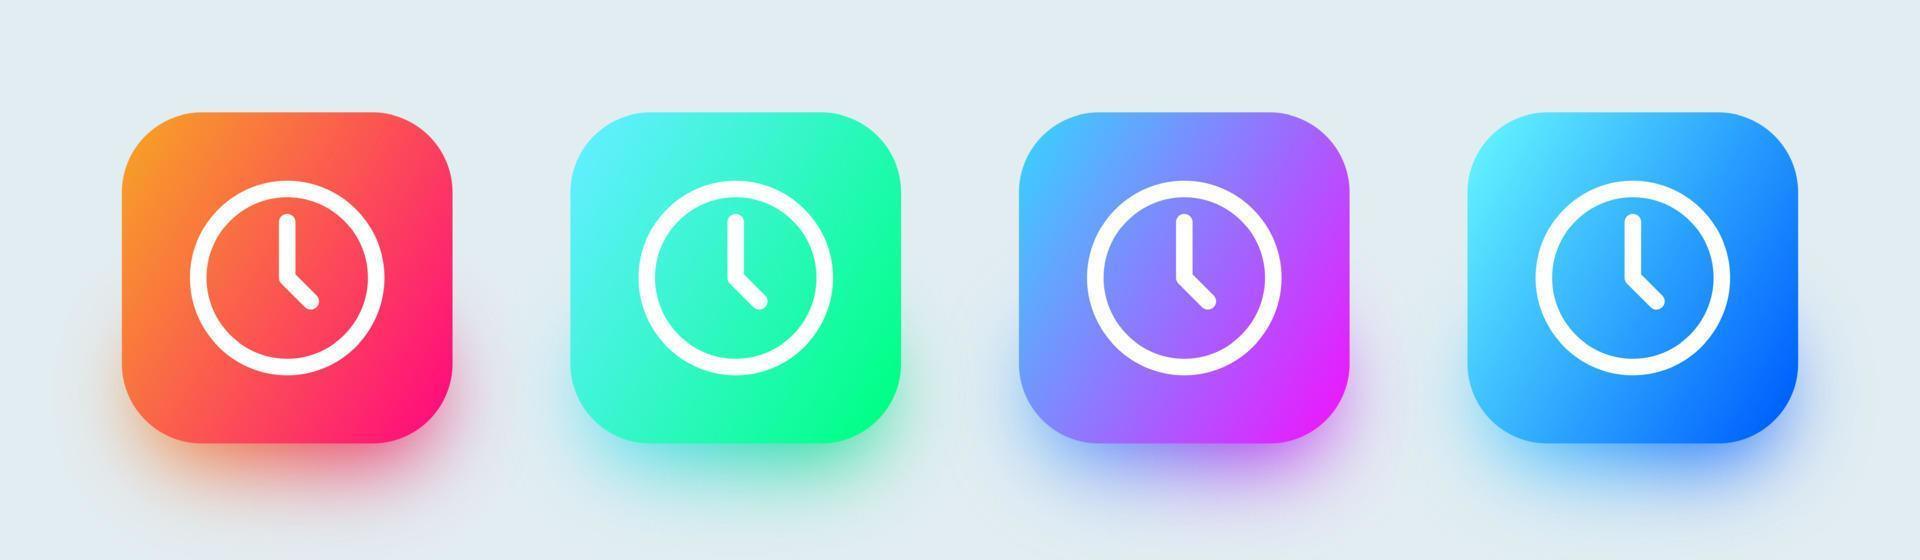 klockikonuppsättning i fyrkantiga övertoningsfärger. vektor tid och klocka ikonuppsättning.